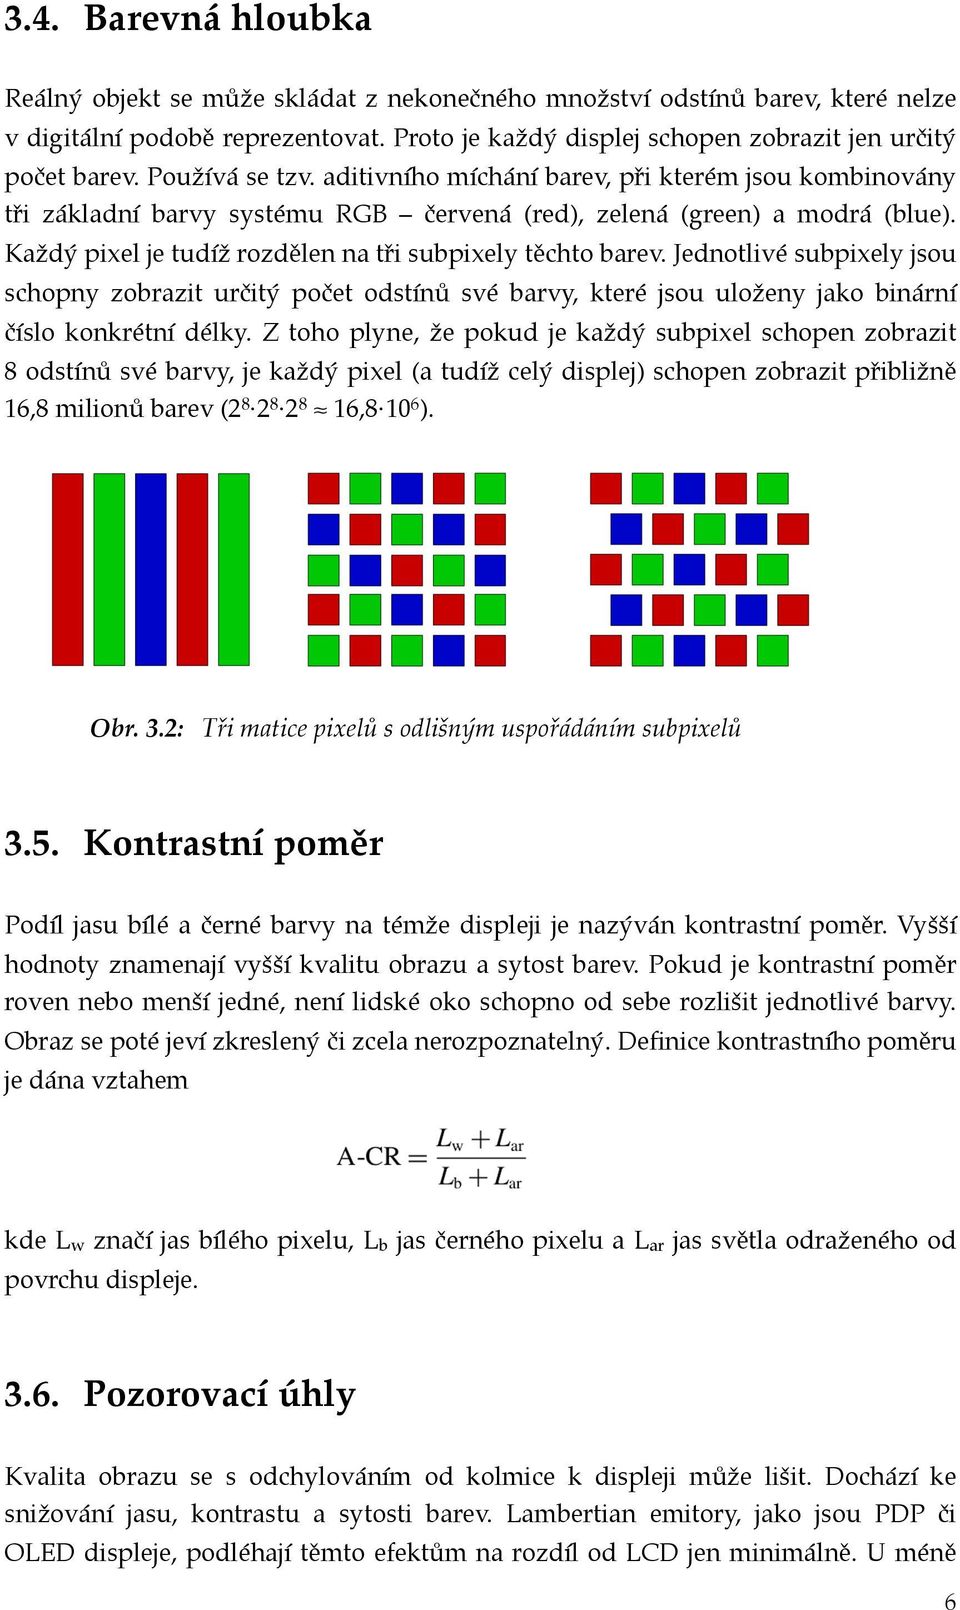 Každý pixel je tudíž rozdělen na tři subpixely těchto barev. Jednotlivé subpixely jsou schopny zobrazit určitý počet odstínů své barvy, které jsou uloženy jako binární číslo konkrétní délky.